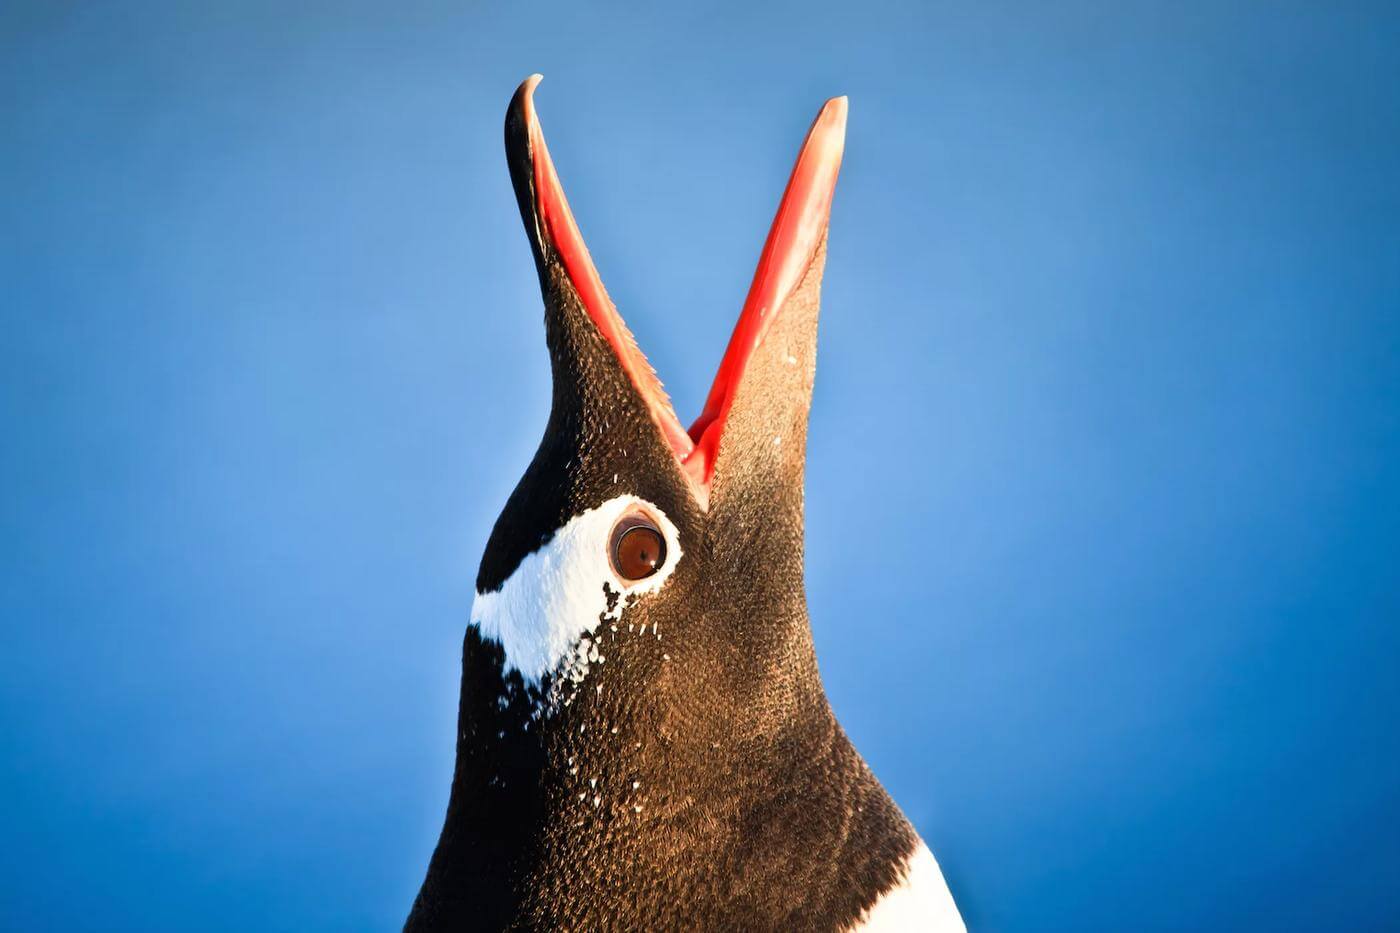 Mata penguin memiliki struktur dan komponen yang luar biasa, yang membantu mereka berburu di bawah air maupun menjelajahi daratan